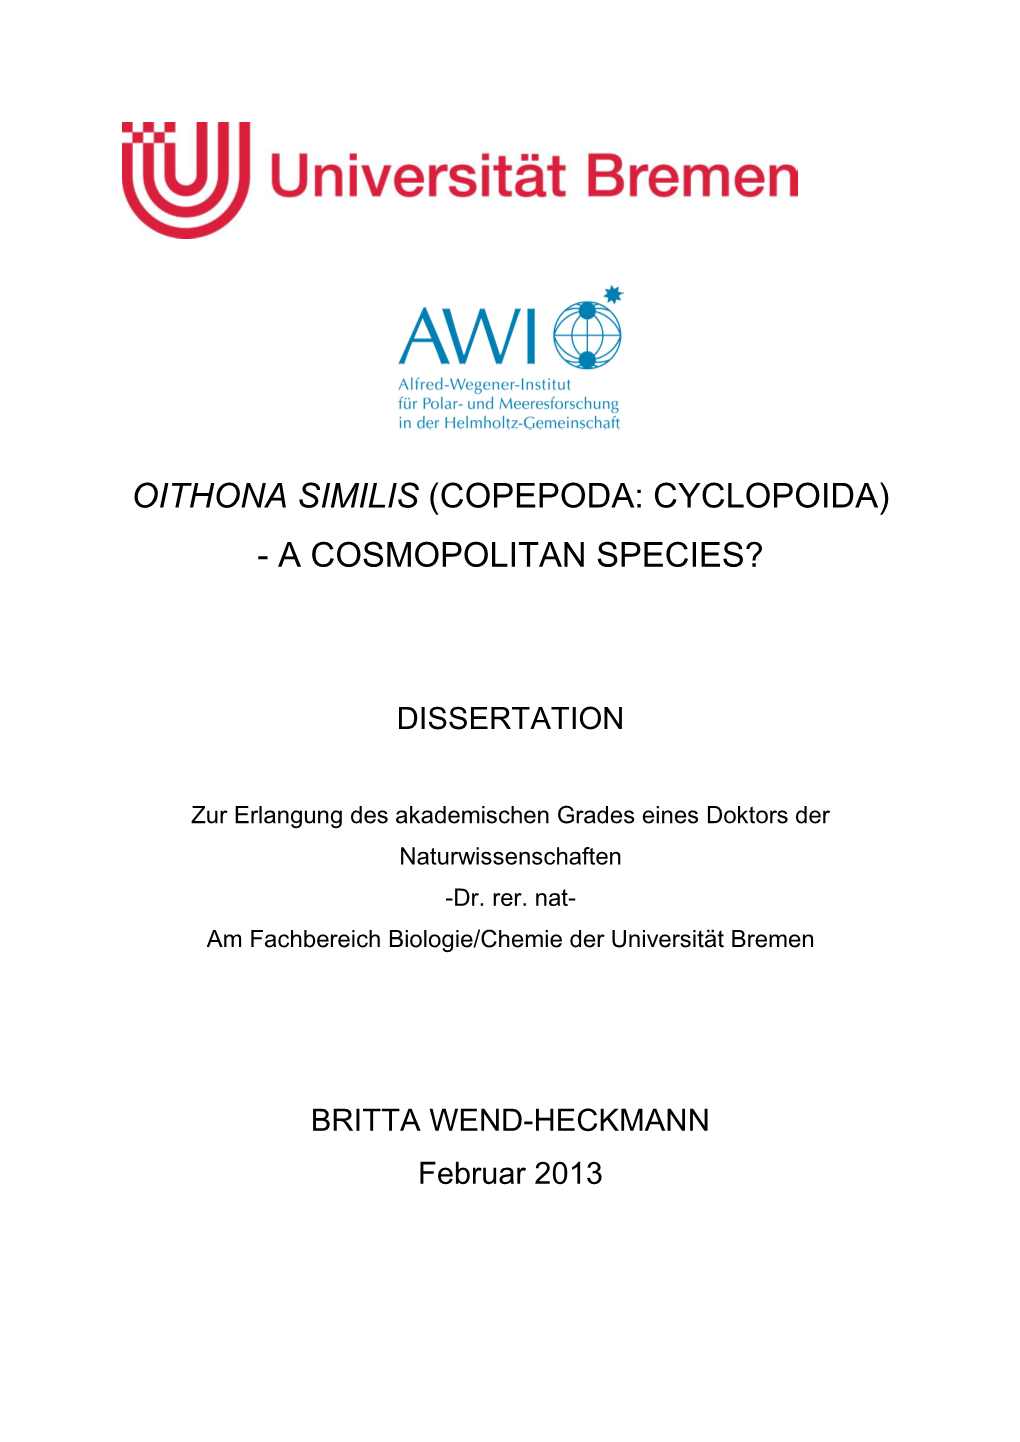 Oithona Similis (Copepoda: Cyclopoida) - a Cosmopolitan Species?